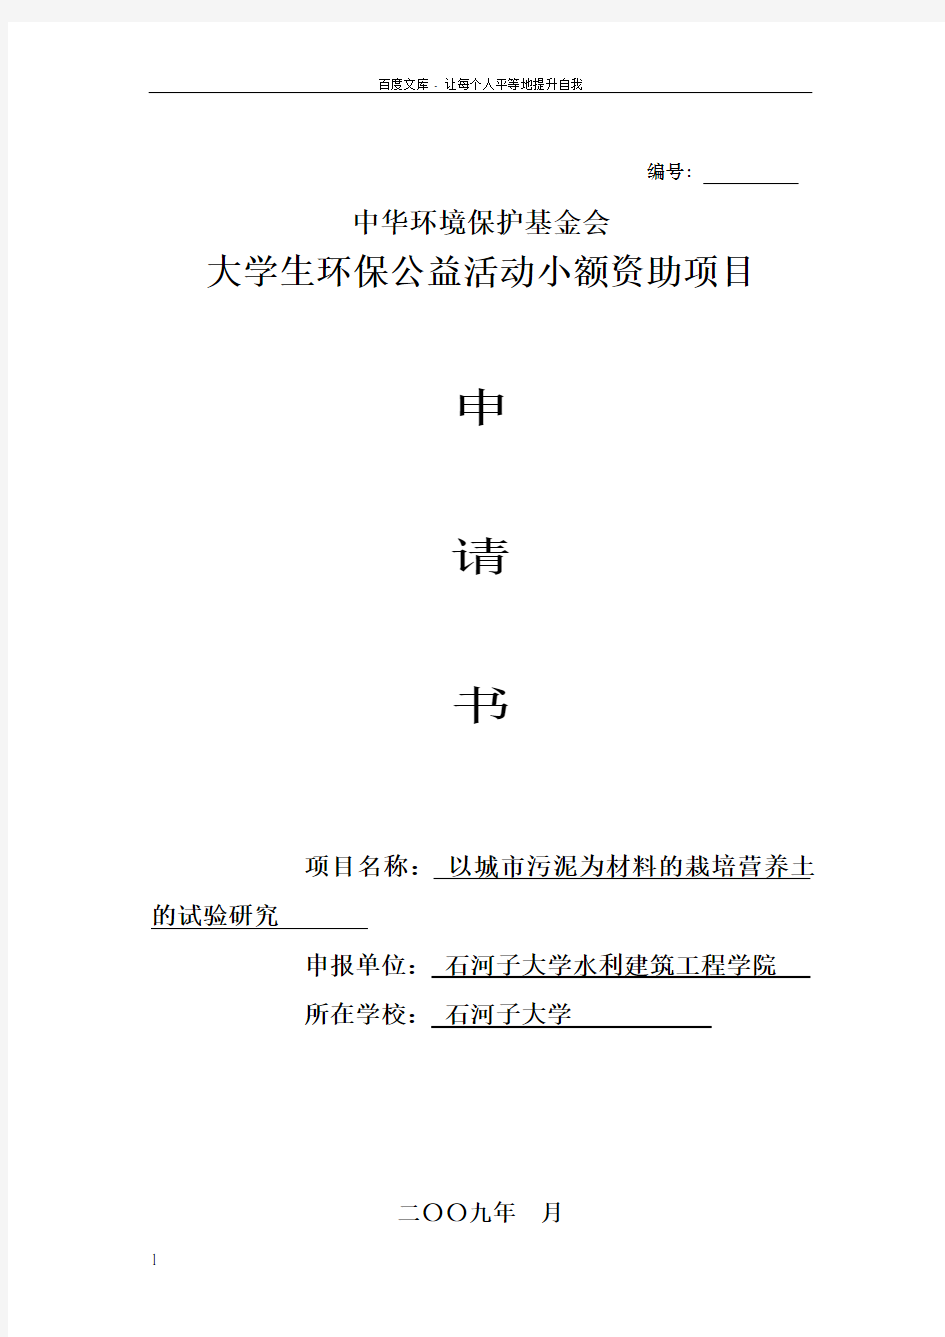 中华环保基金小额资助项目申请书6(徐凤)